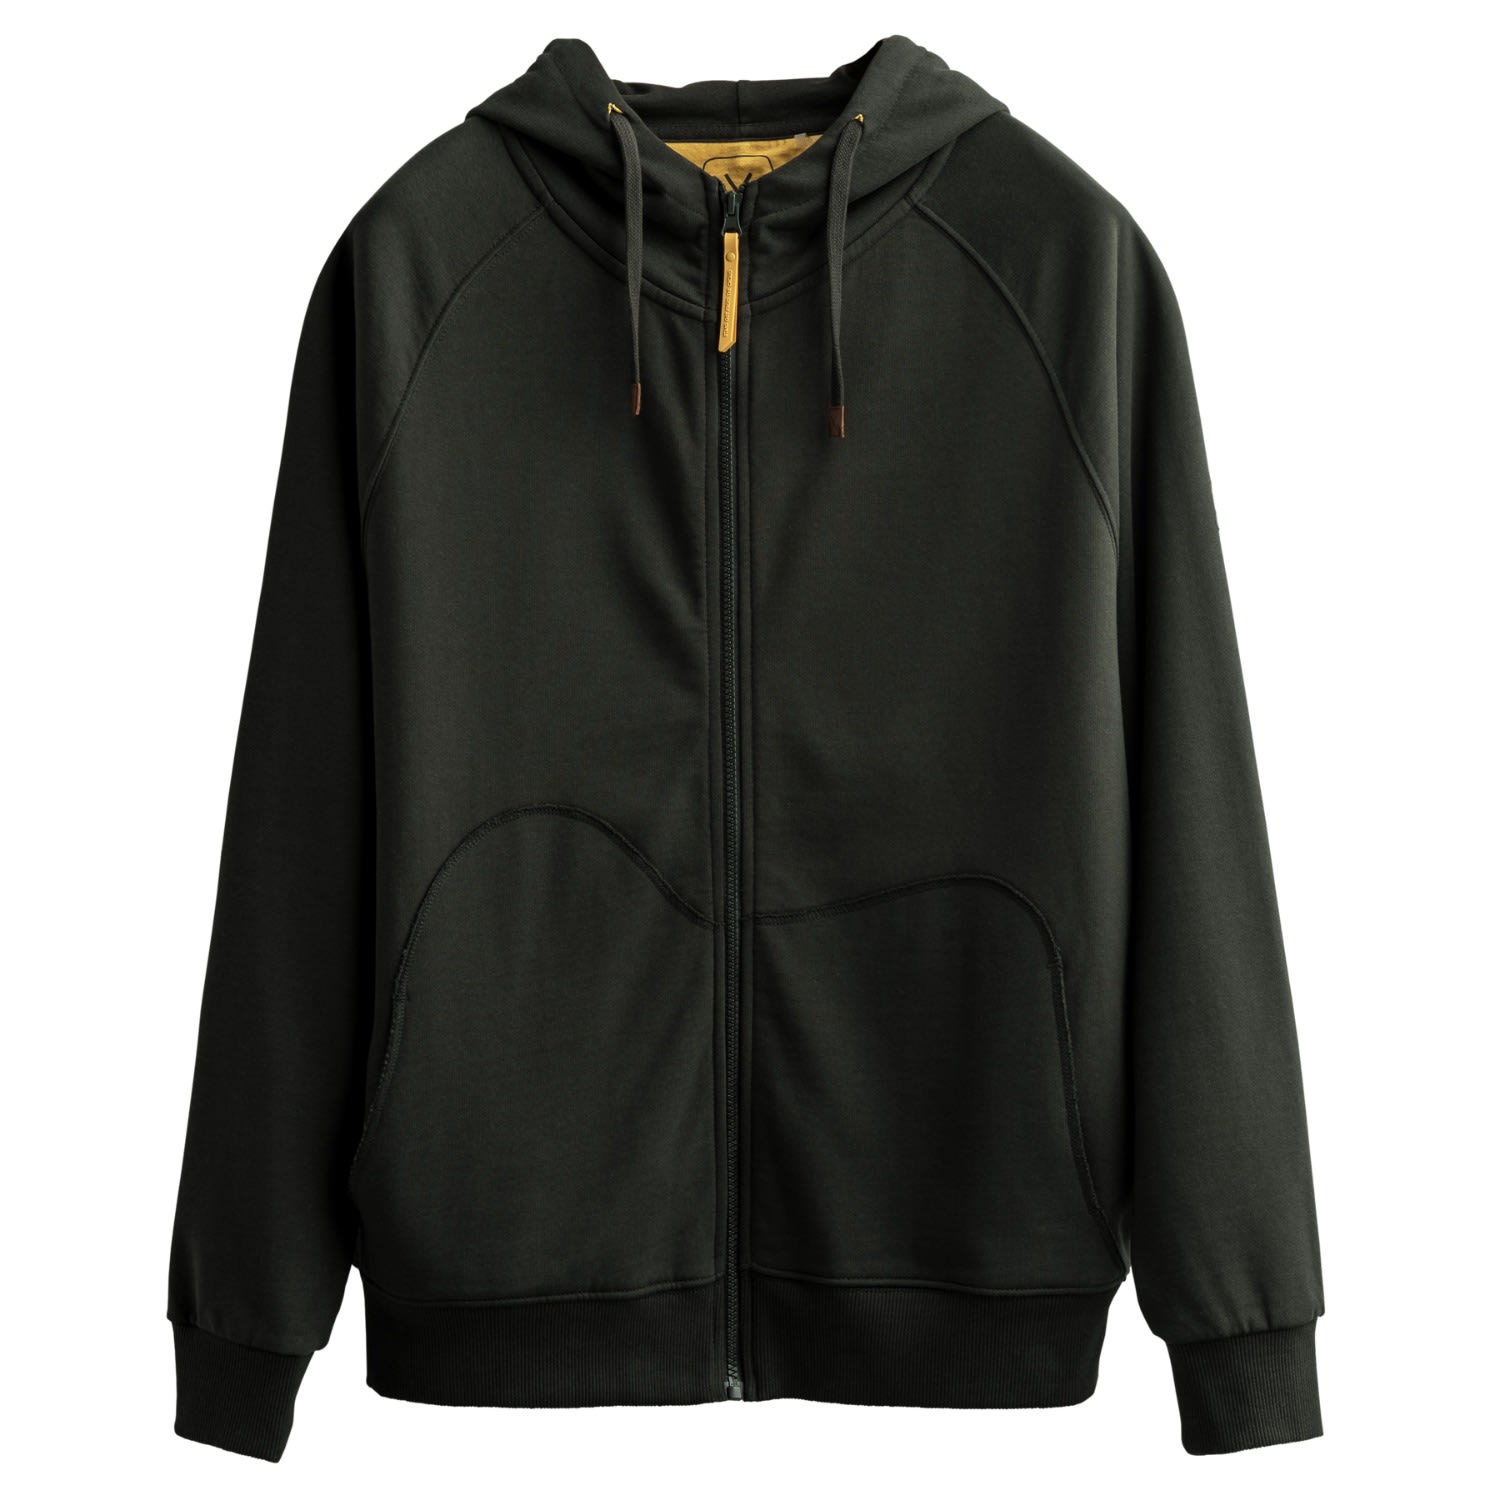 Men's Black Unisex Design Zip Hoodie Sweatshirt - Zipper - Asphalt Extra Small KAFT